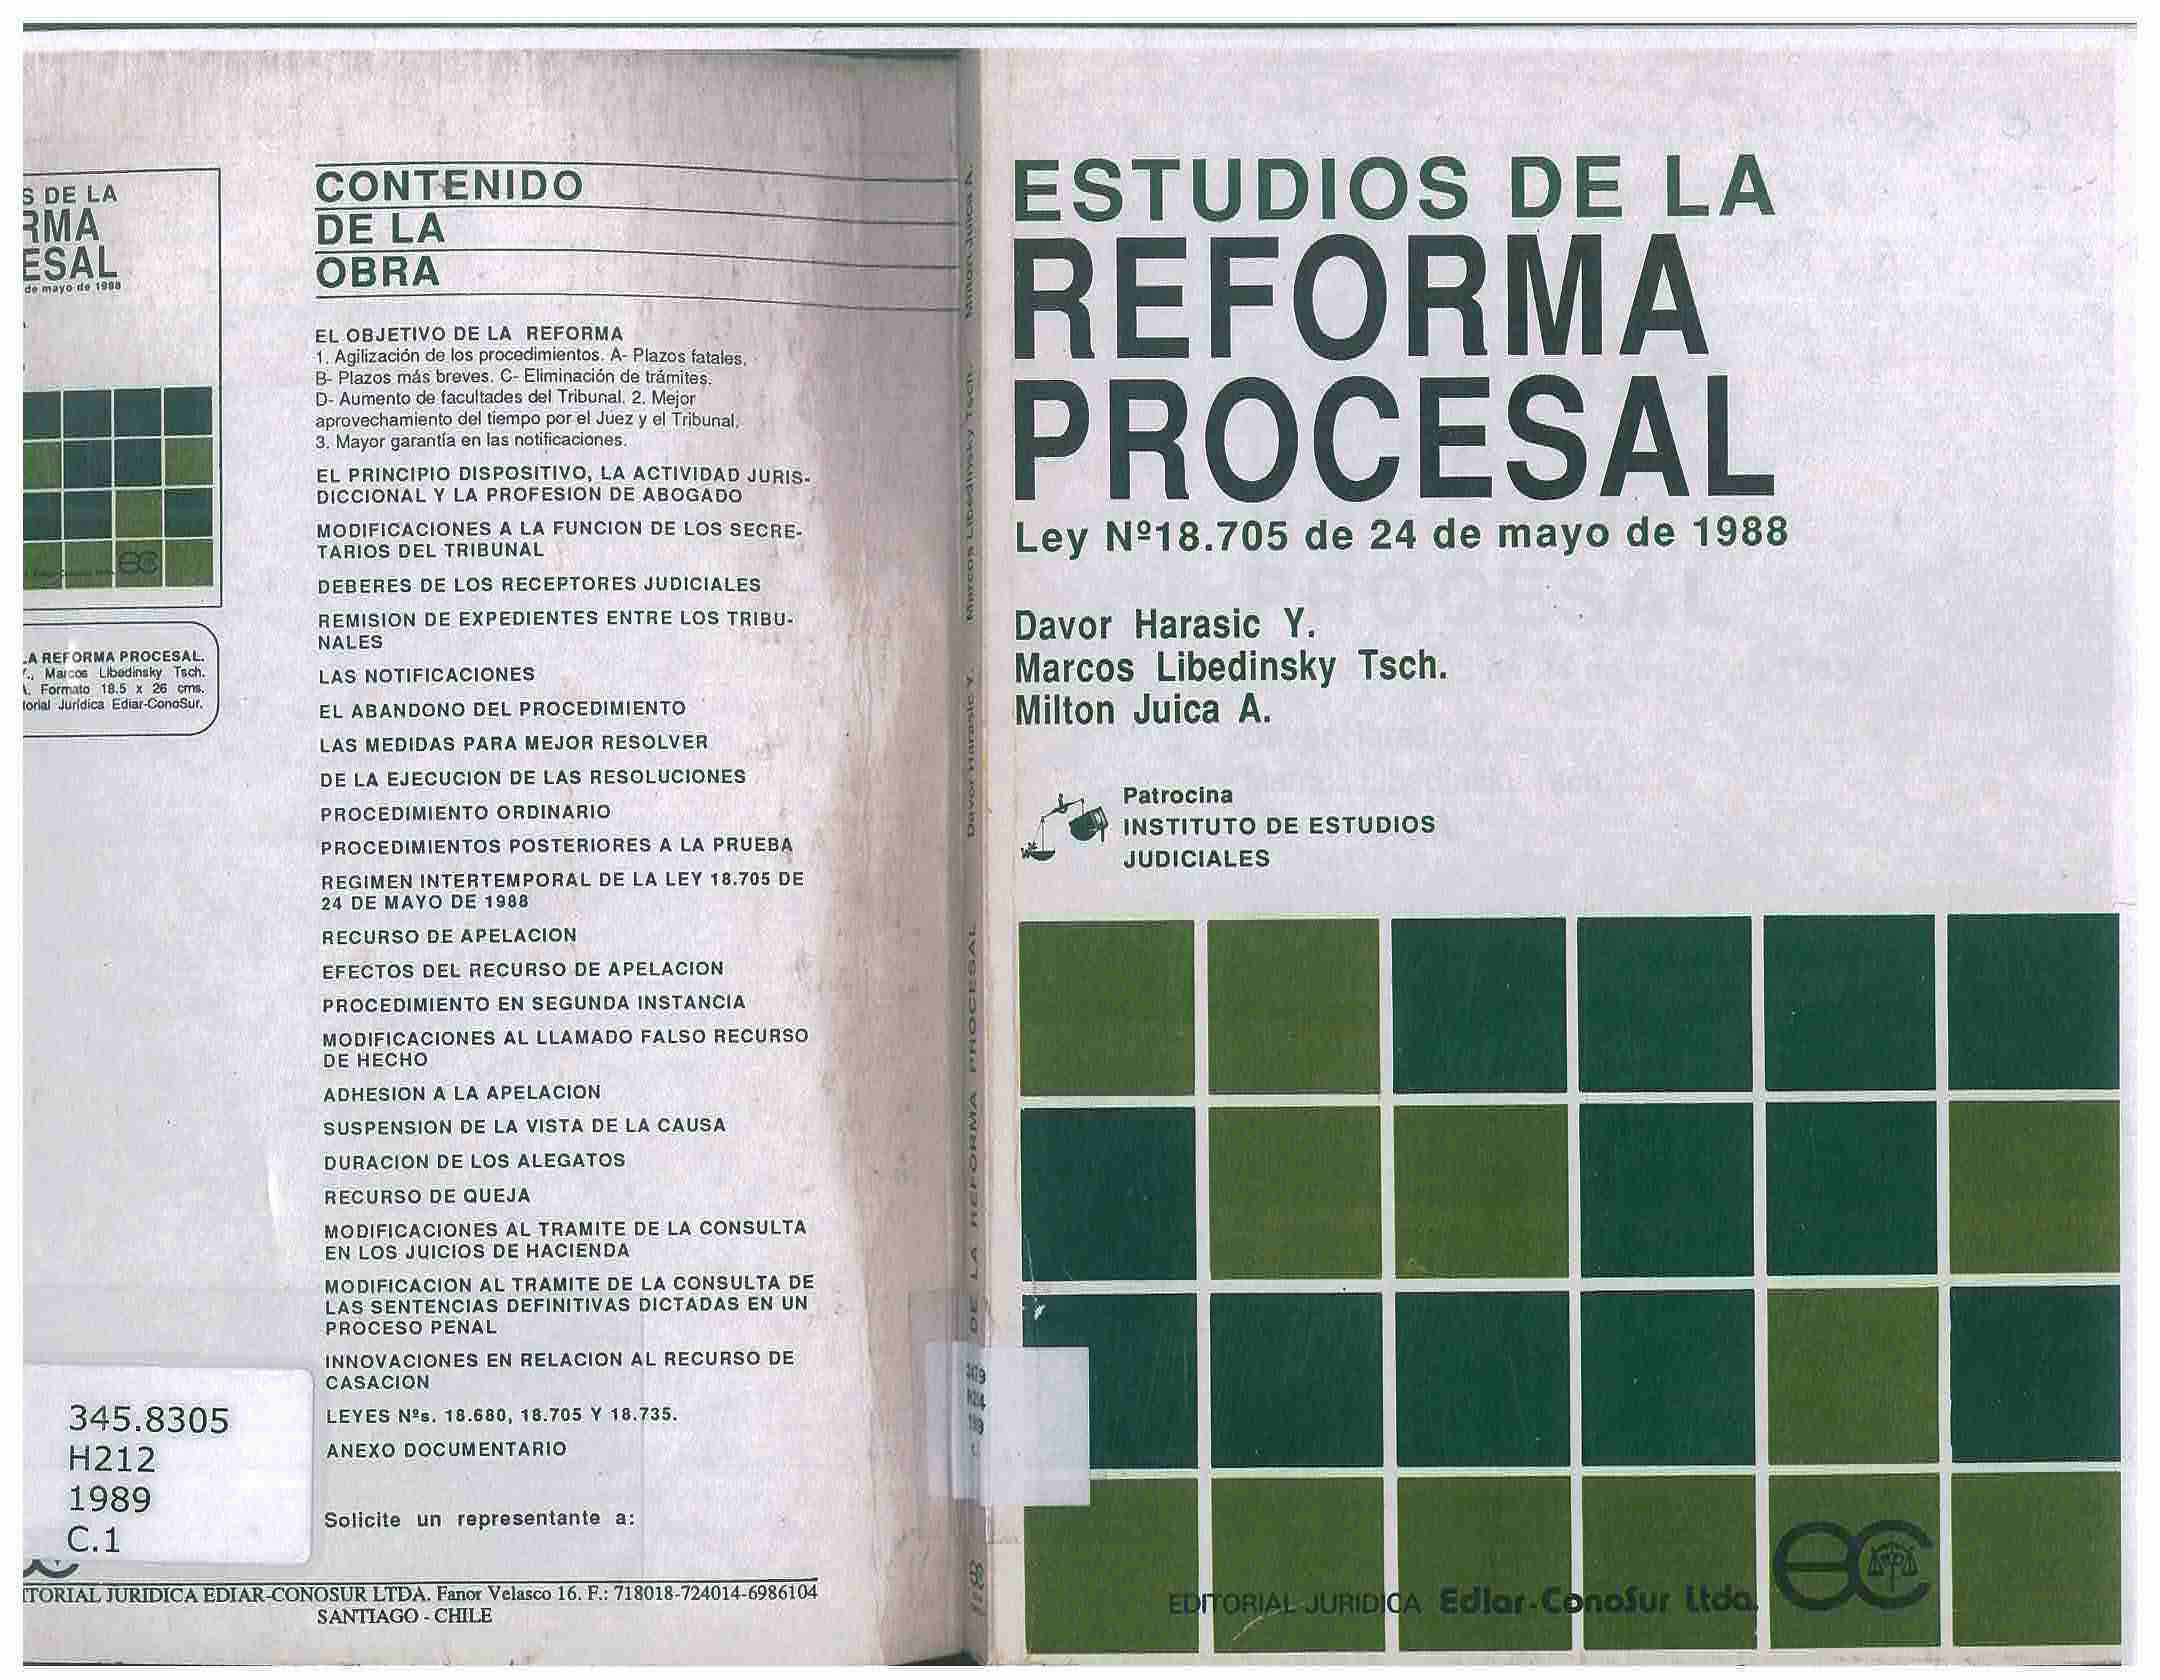 Estudios de la reforma procesal : ley N° 18705 de 24 de Mayo de 1988